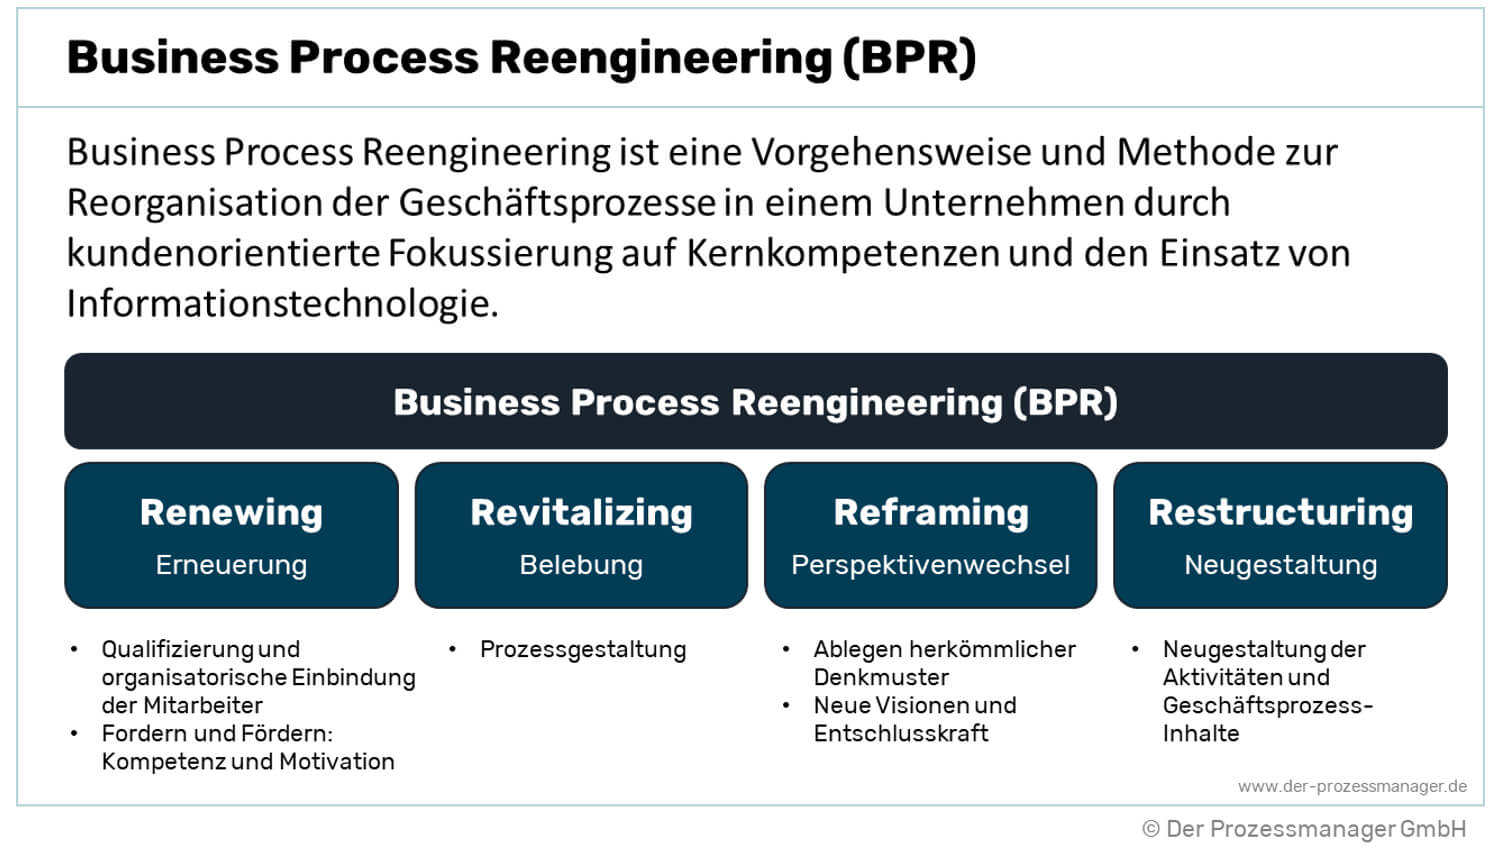 Business Process Reengineering einfach erklärt!